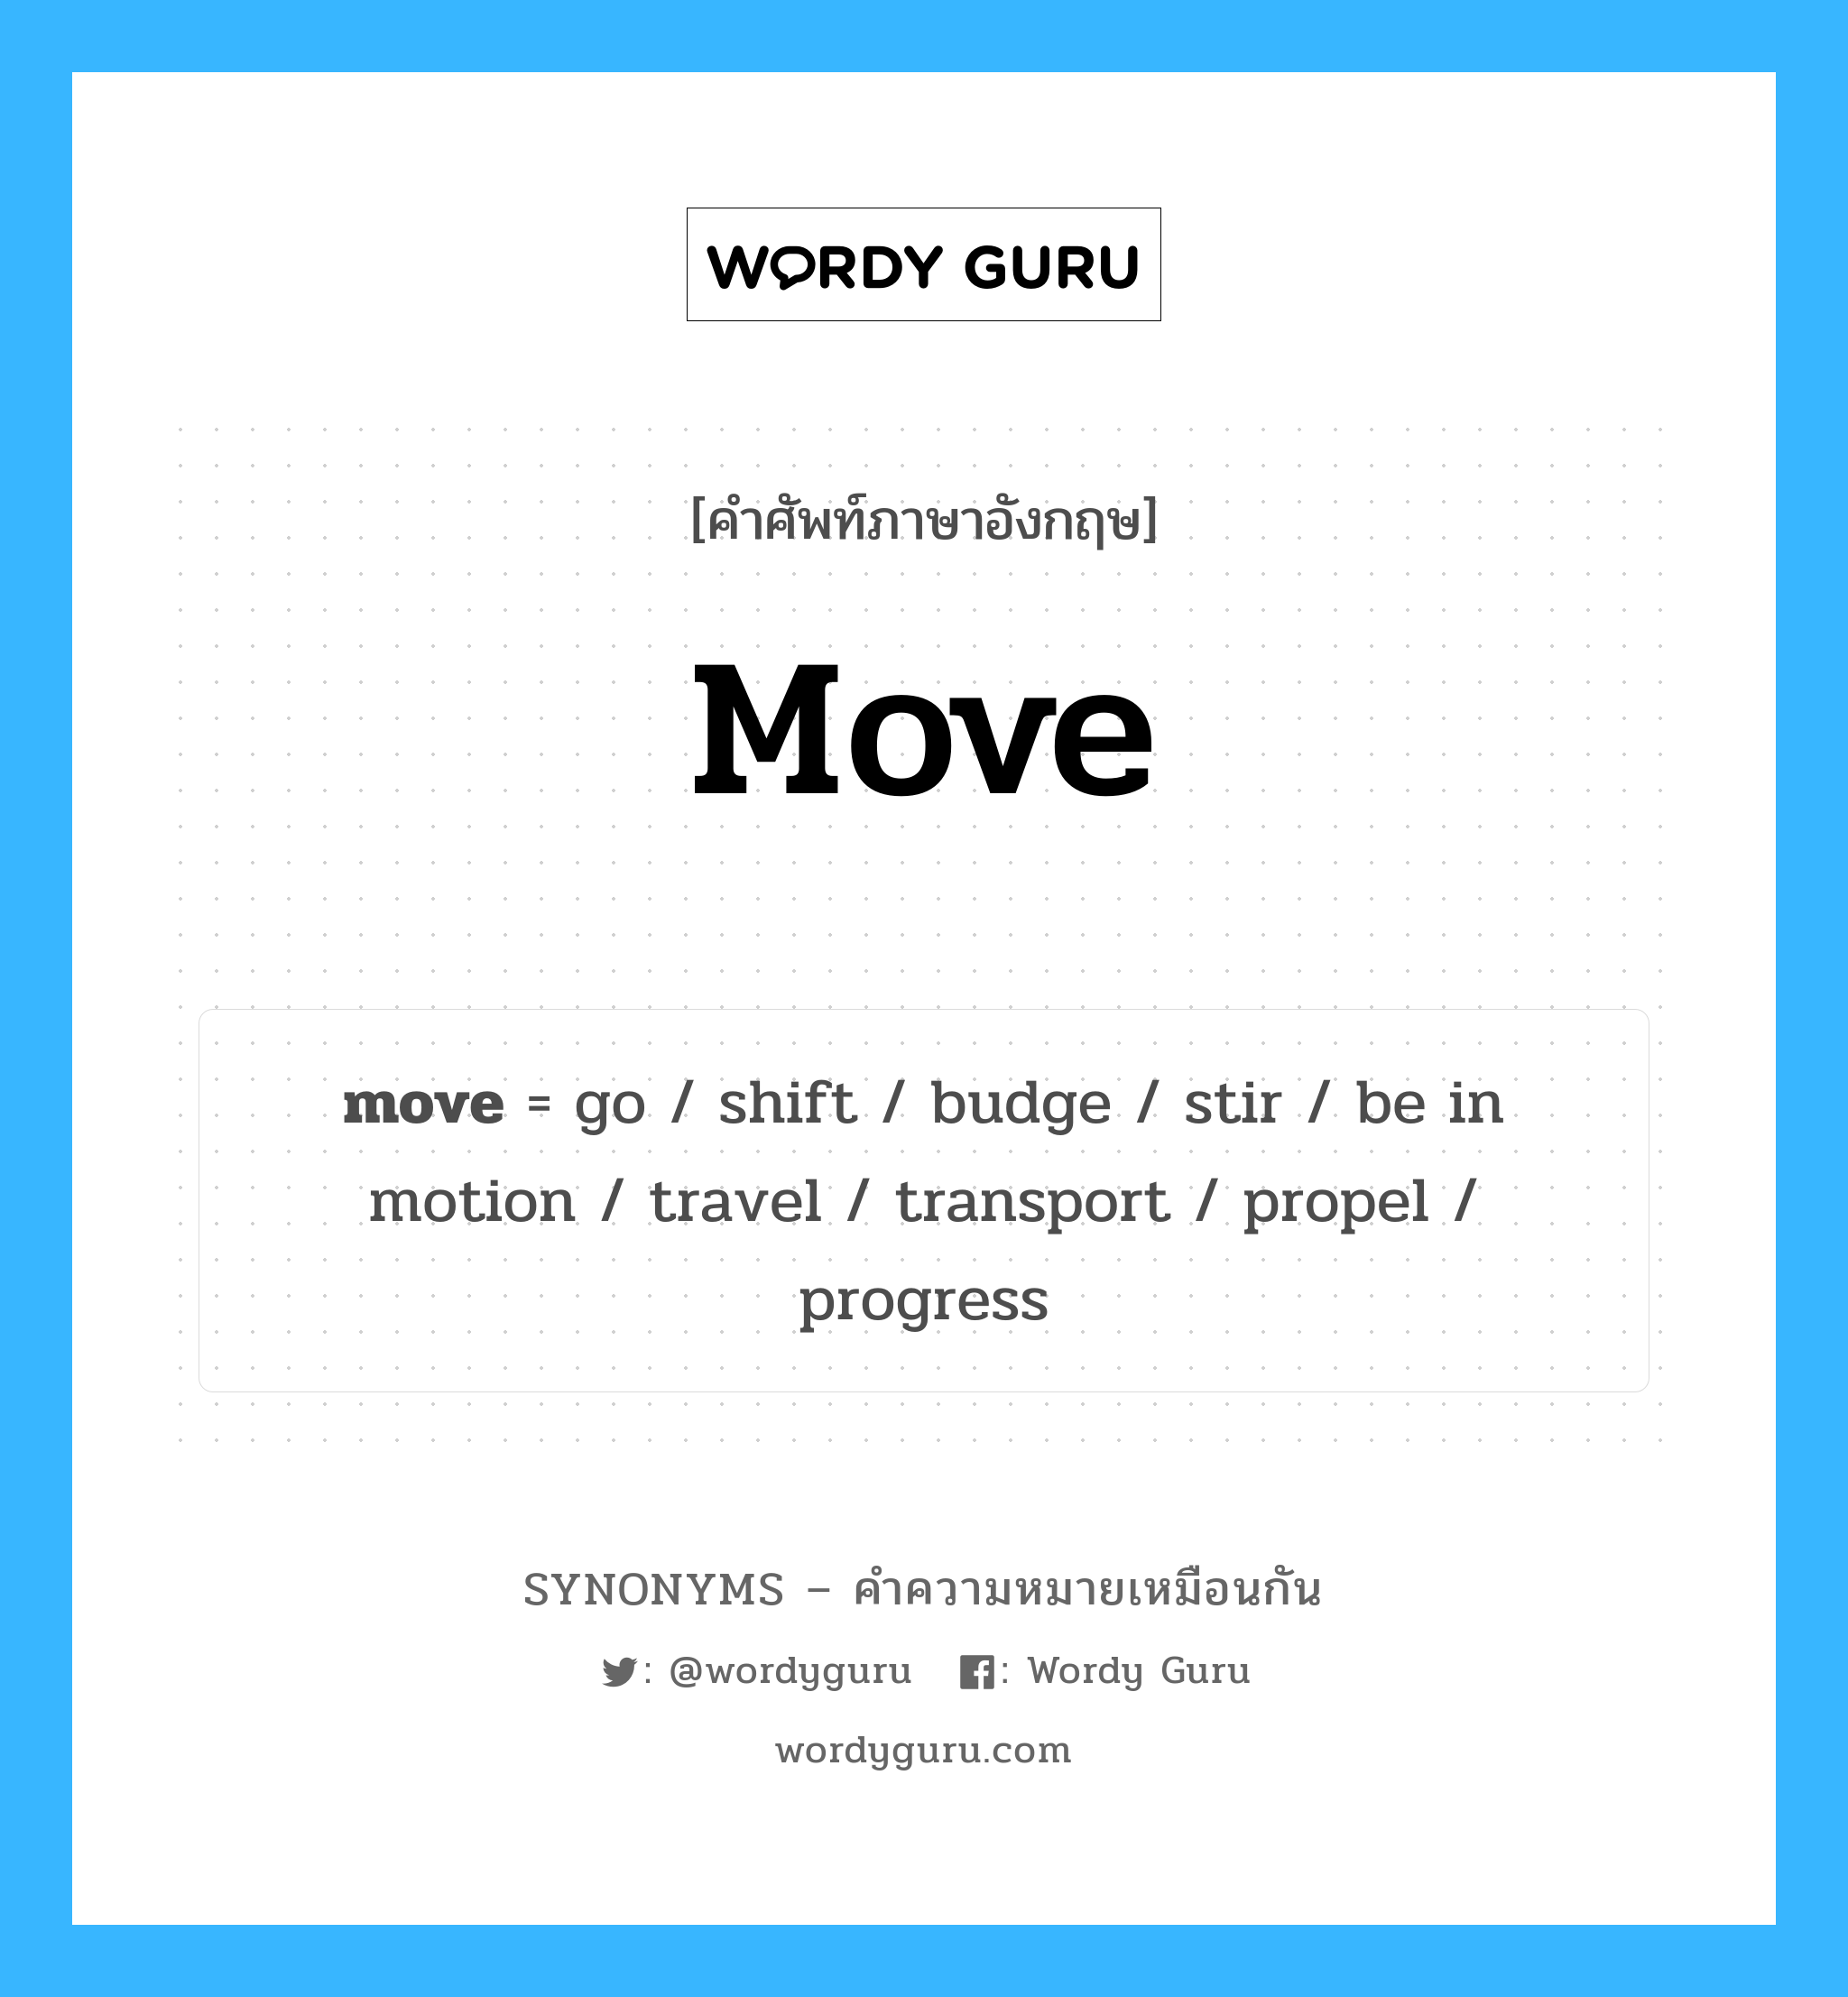 transport เป็นหนึ่งใน move และมีคำอื่น ๆ อีกดังนี้, คำศัพท์ภาษาอังกฤษ transport ความหมายคล้ายกันกับ move แปลว่า ขนส่ง หมวด move